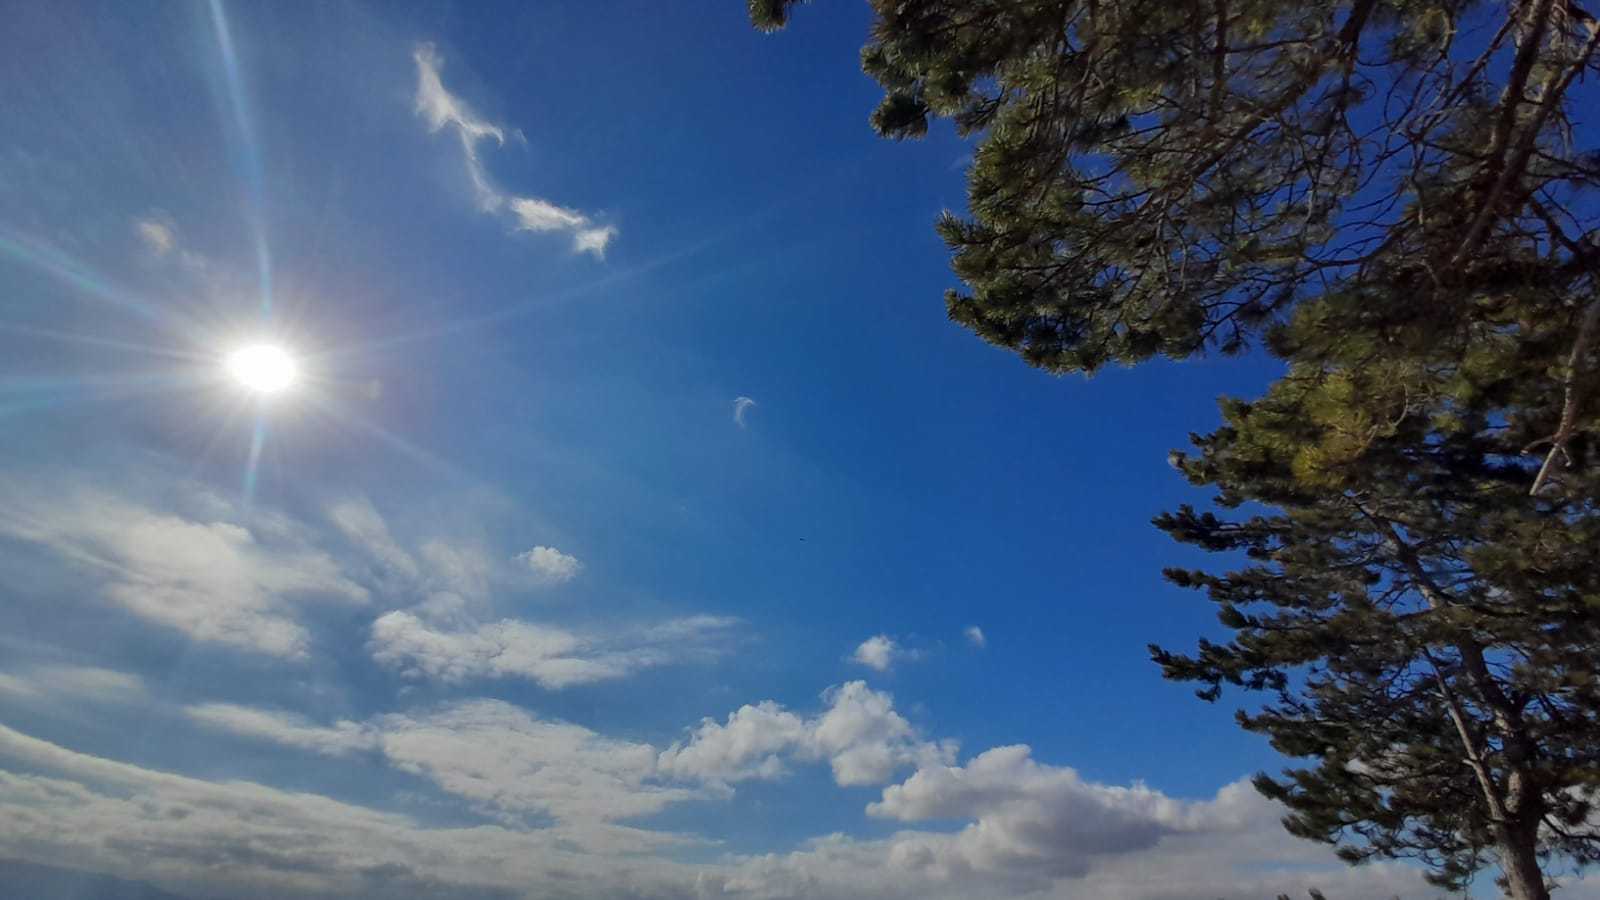 Meteo Ragusa: domani martedì 12 Dicembre poco nuvoloso per velature, previste forti raffiche di vento.